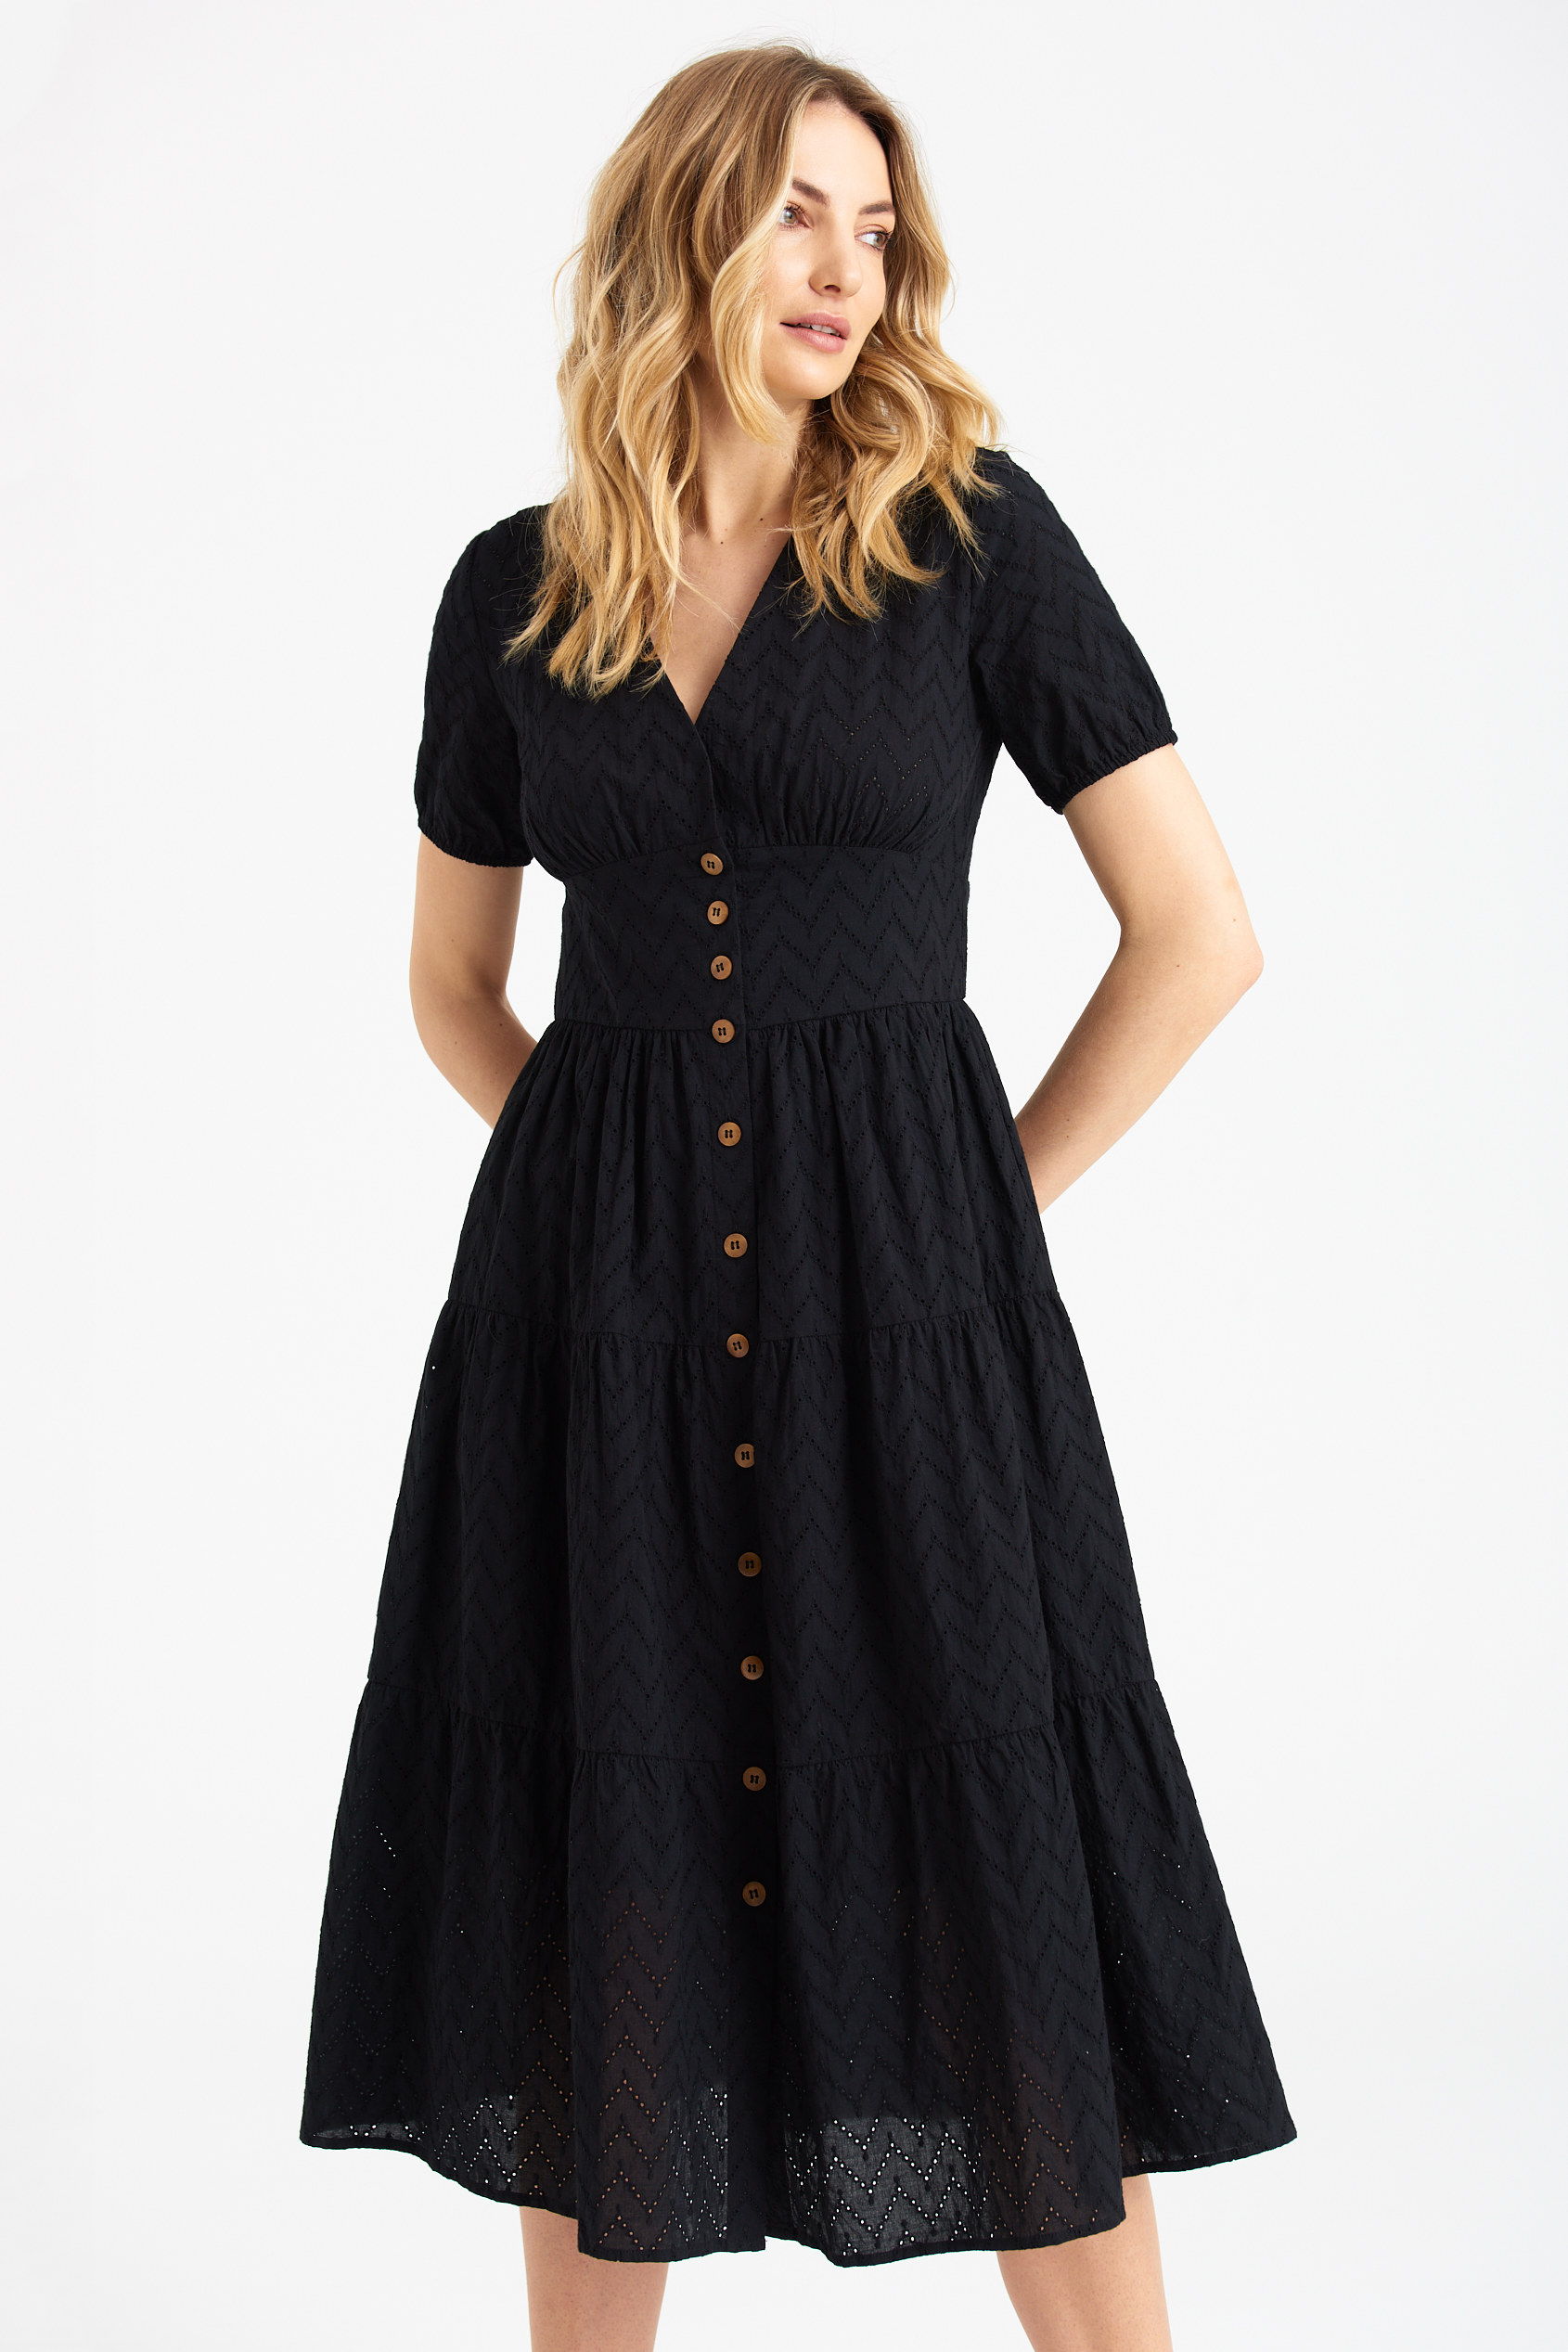 Bawełniana, ażurowa sukienka w czarnym kolorze